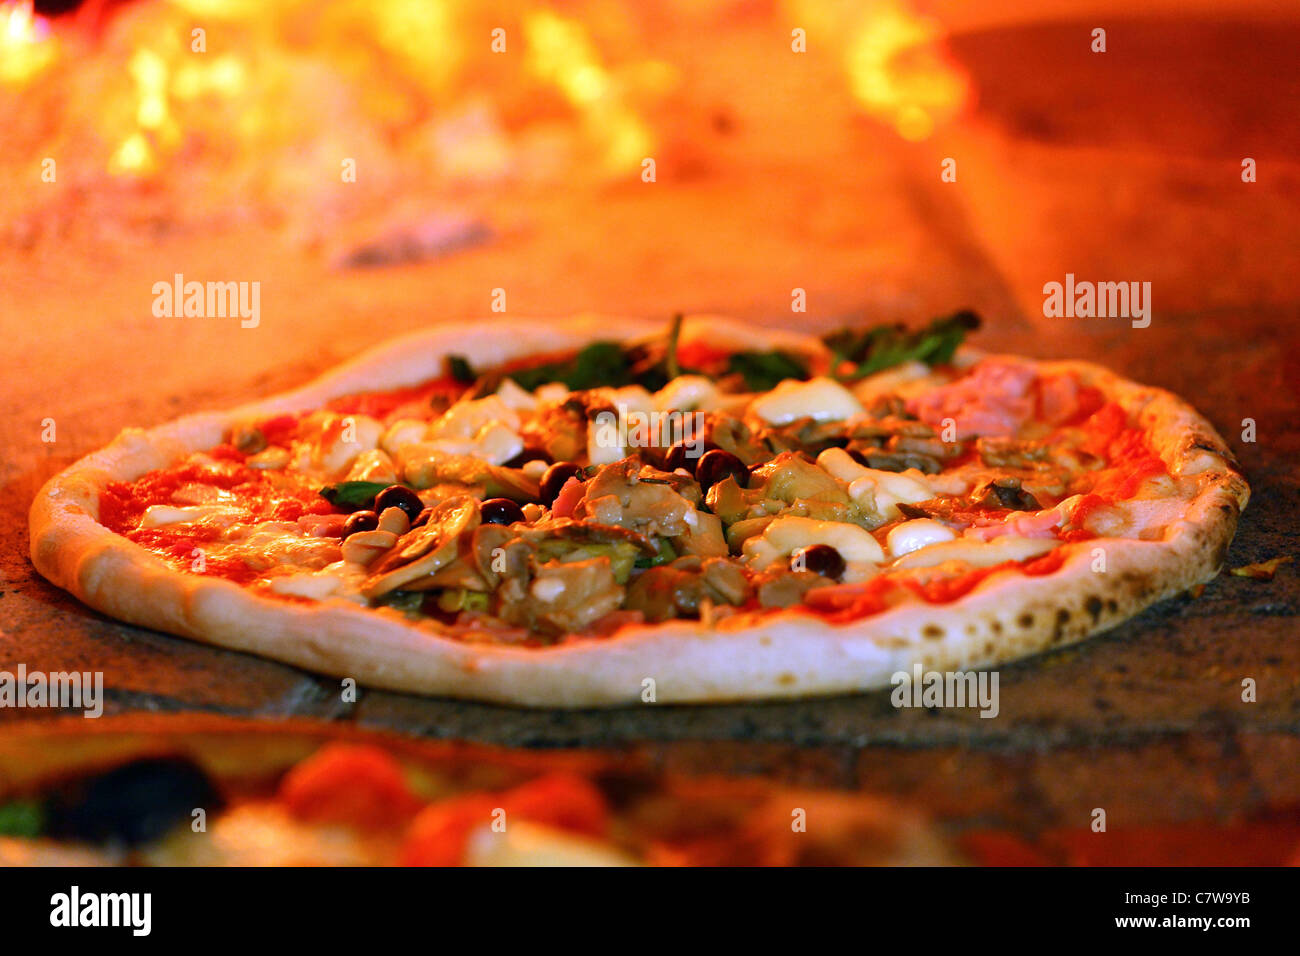 Italy, Campania, Naples, pizza Stock Photo